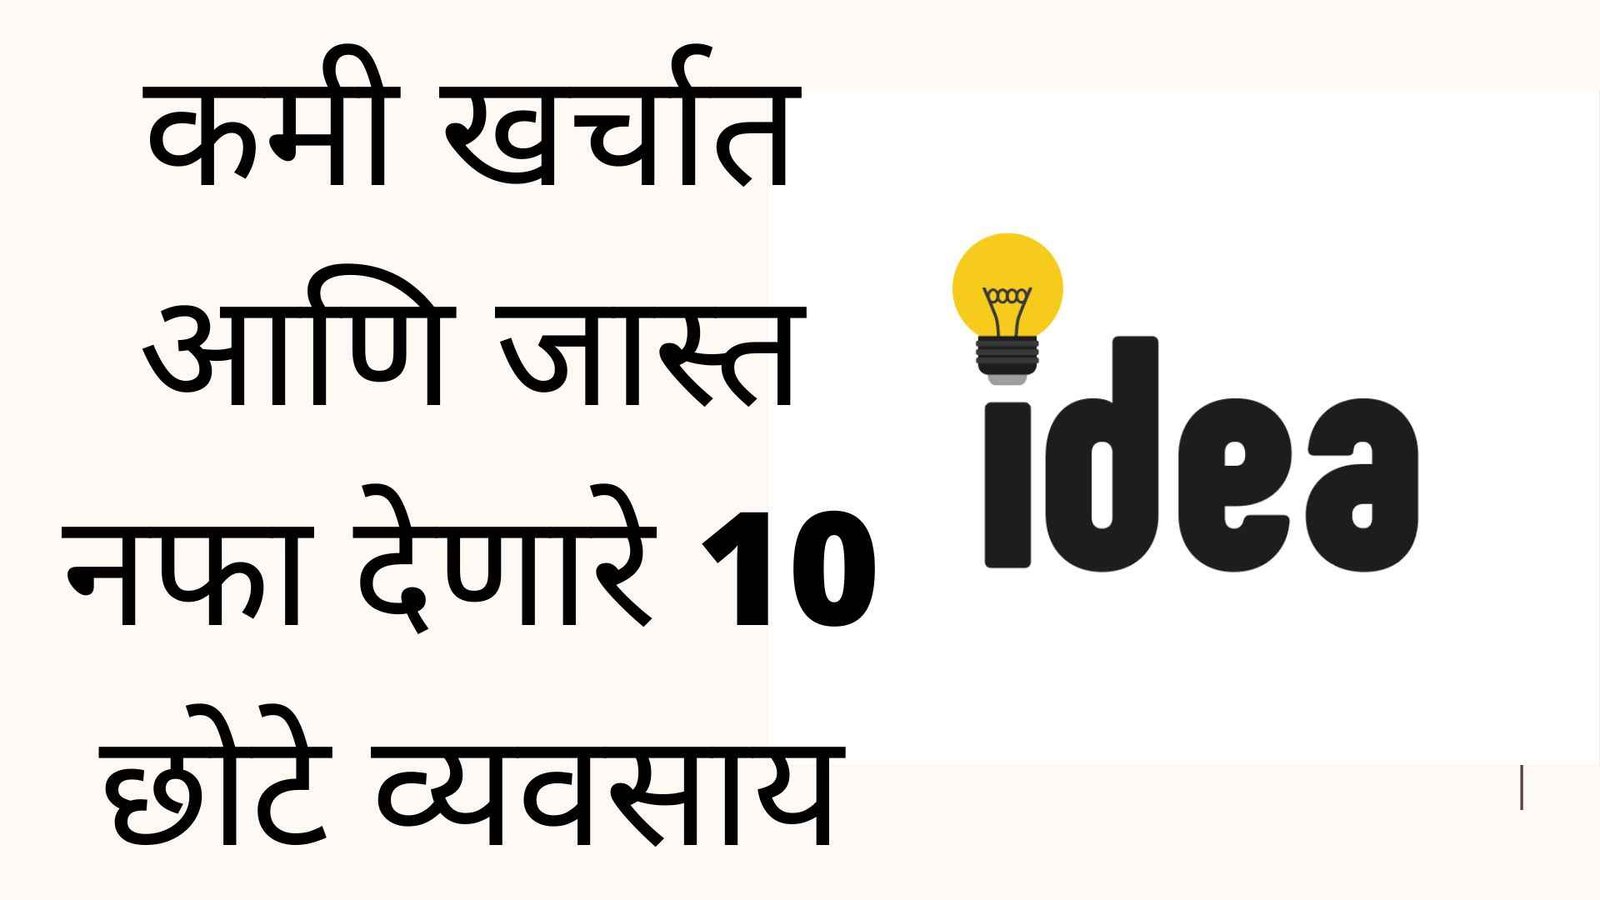 कमी खर्चात आणि जास्त नफा देणारे 10 छोटे व्यवसाय | Top 10 Small Business Ideas In Marathi